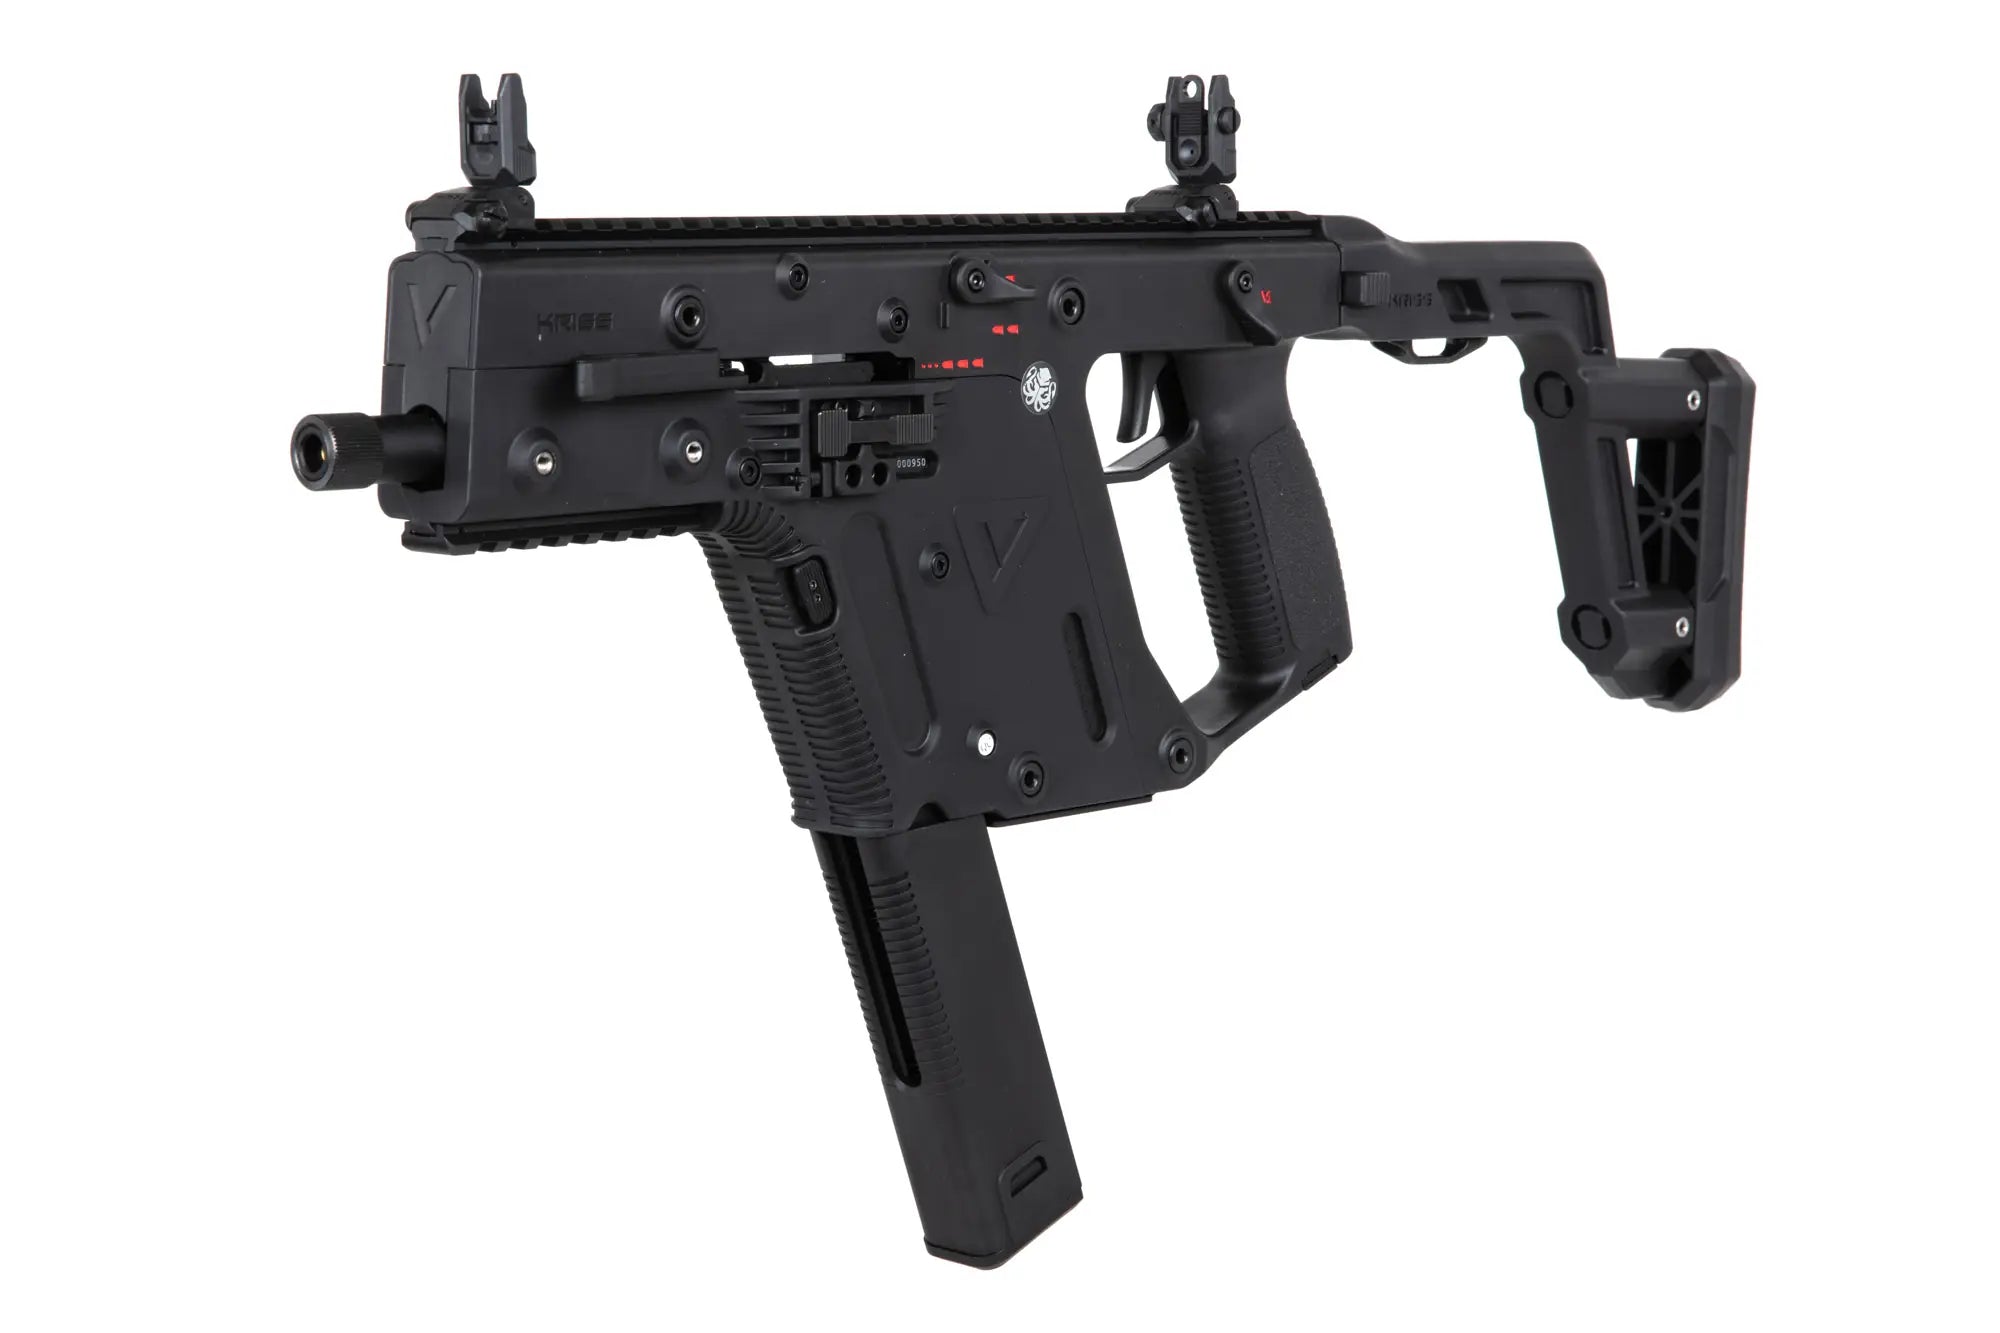 Krytac Kriss Vector GBB submachine airsoft gun-3